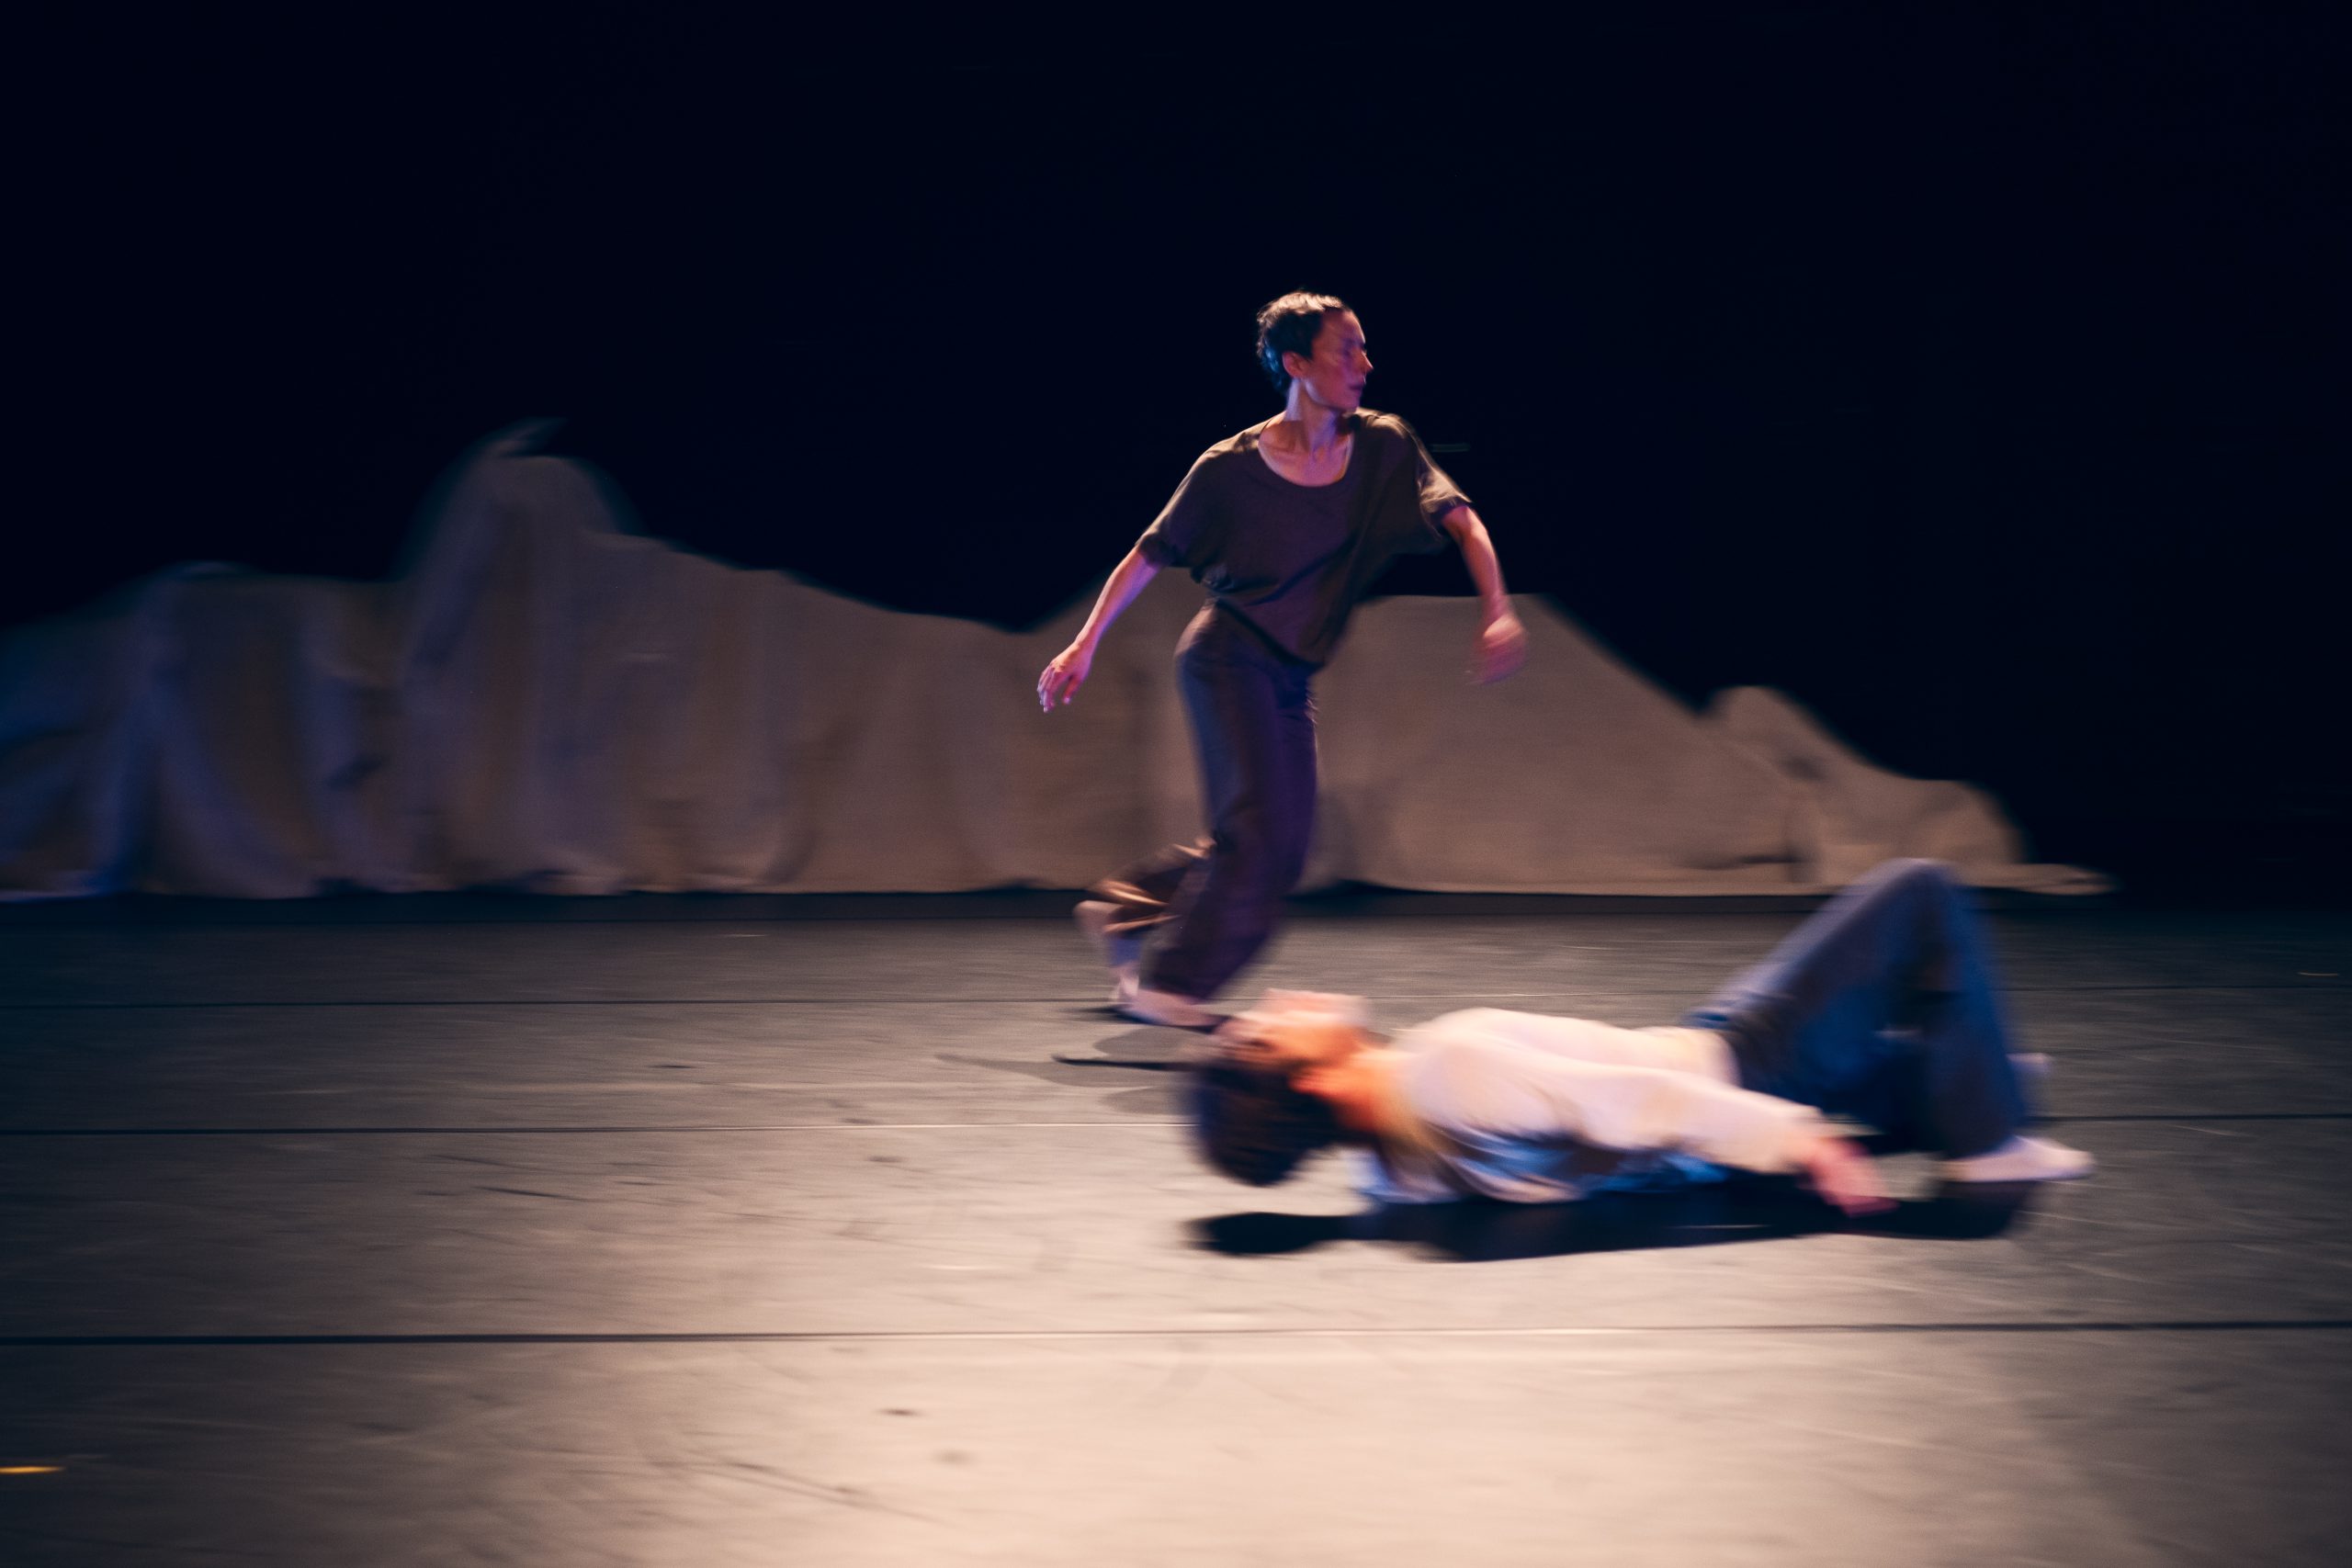 Eine Frau rennt, ein Mann legt sich auf den Boden. Eine dynamische Szene auf der Bühne.